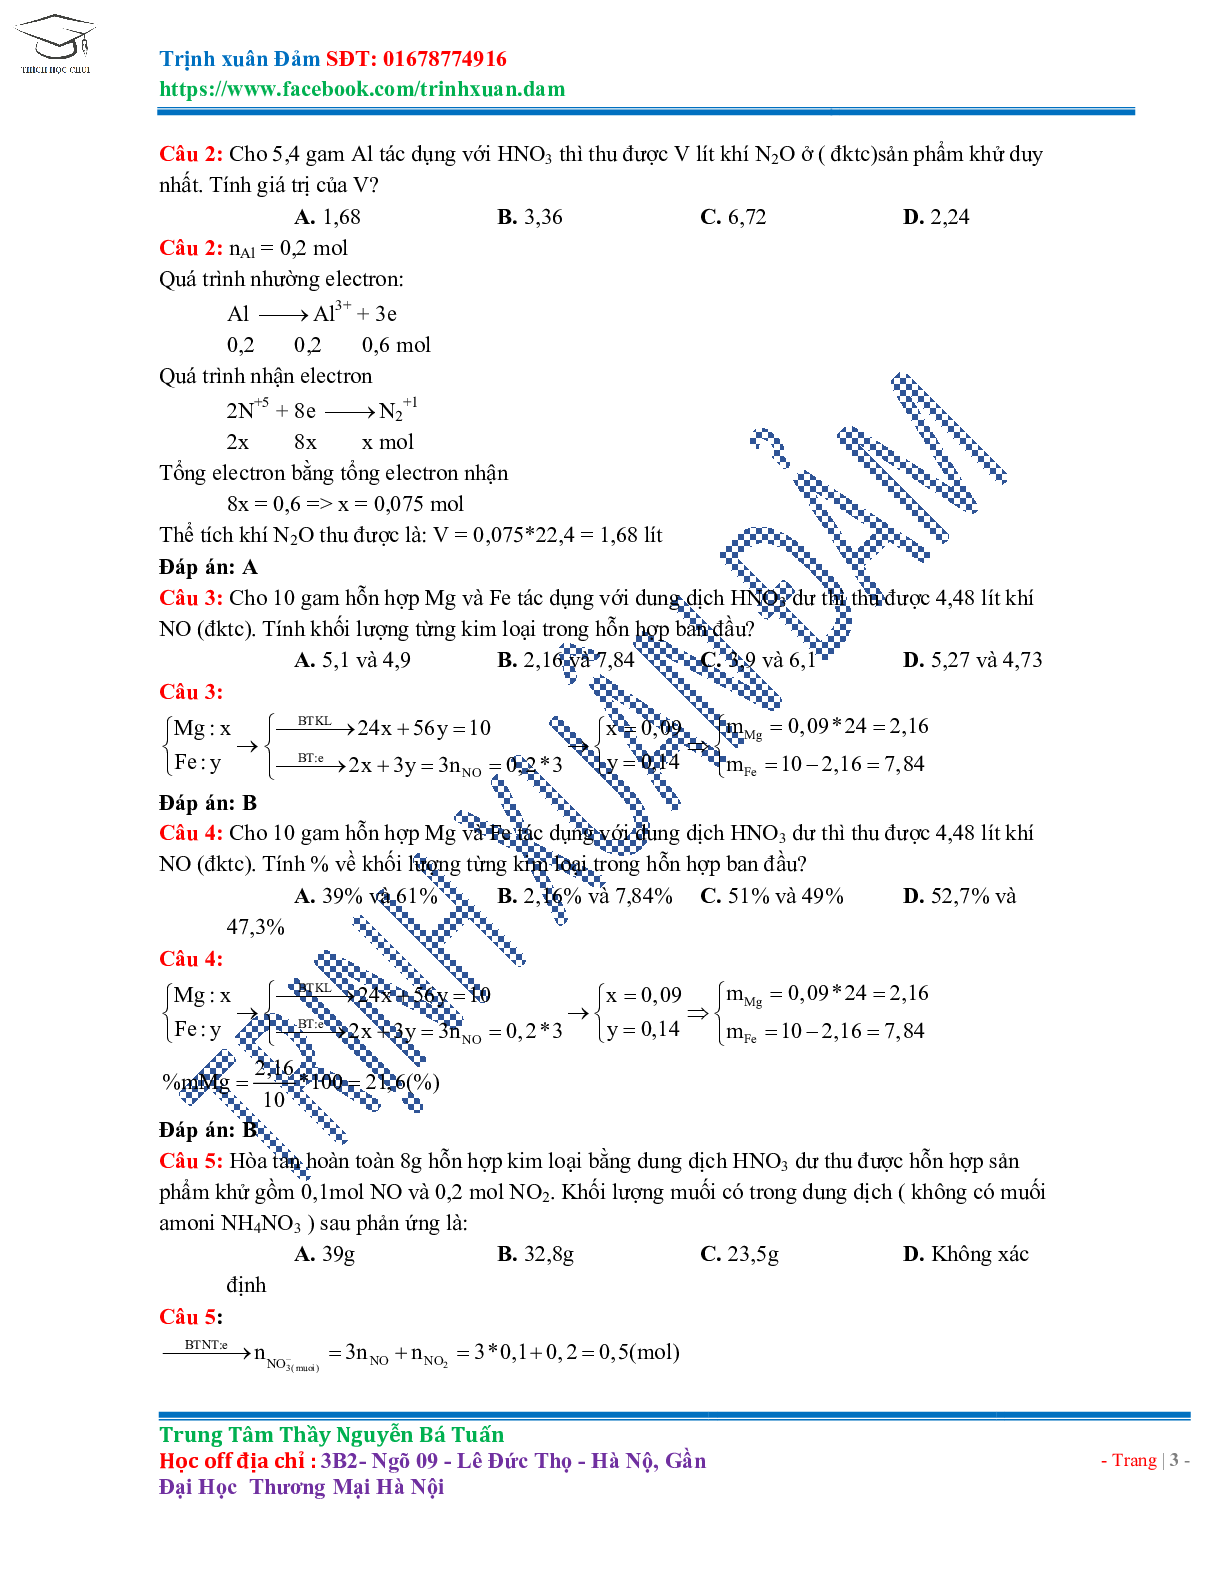 Bài toán chuyên đề HNO3 môn Hóa học lớp 11 (trang 3)